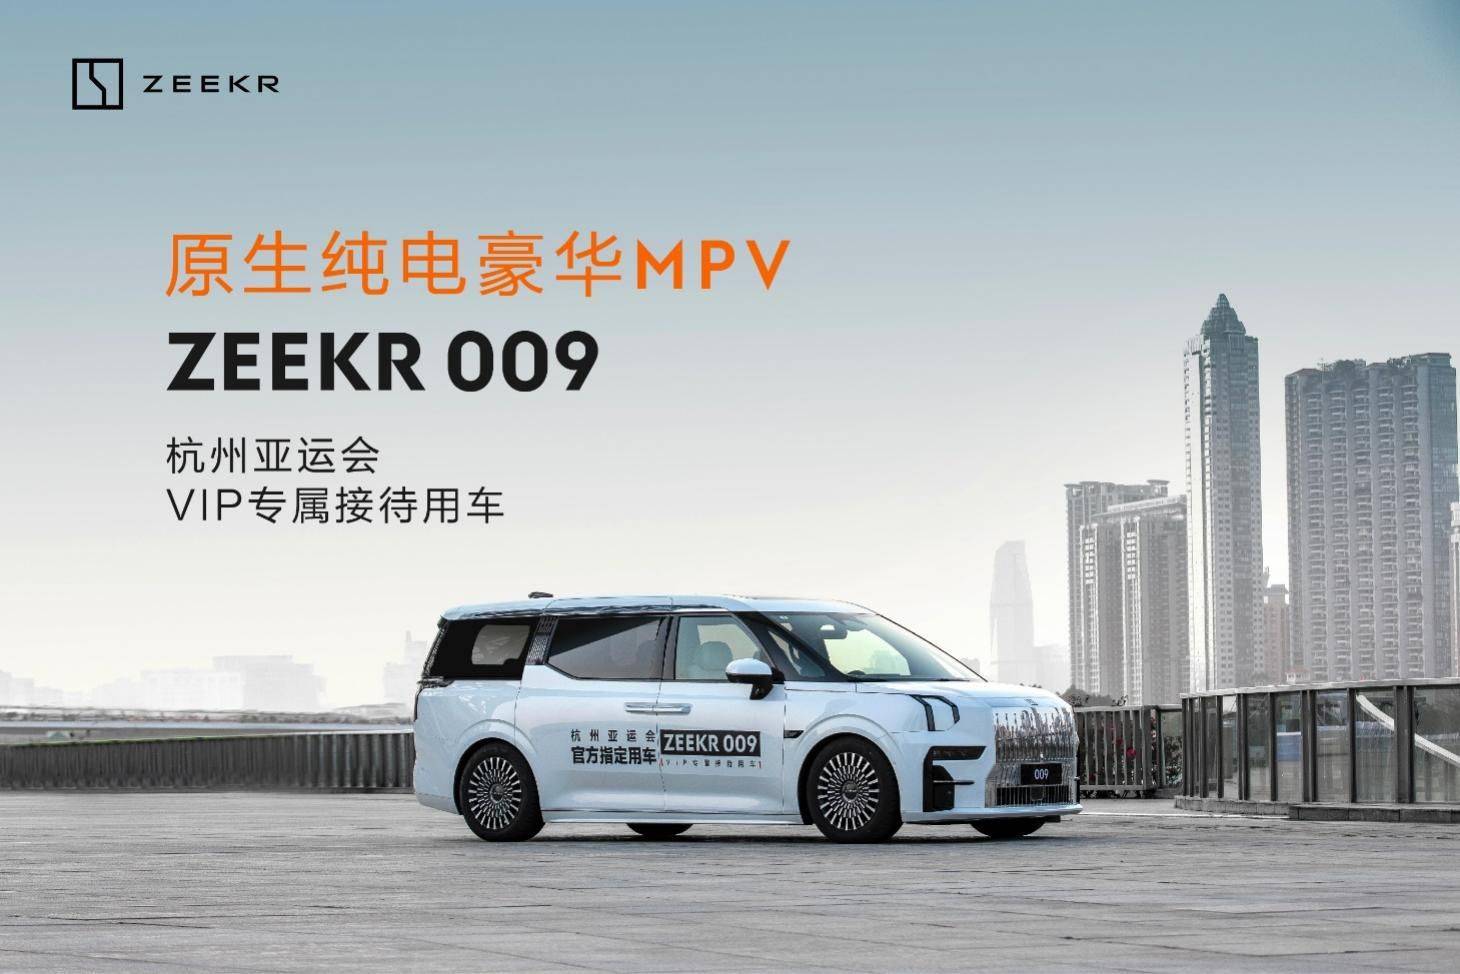 乘车安全版小苹果
:贵宾尊享，极氪009成为杭州亚运会VIP专属用车